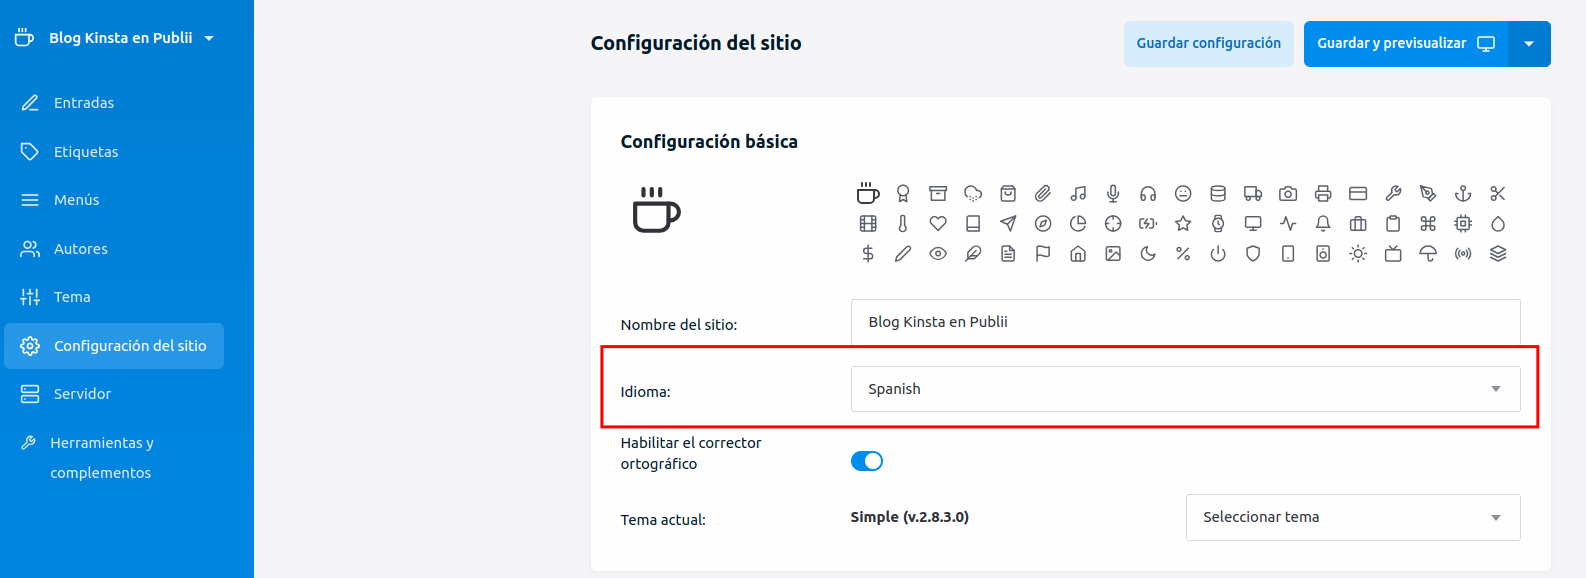 Captura de pantalla de la Configuración del sitio en Publii. Remarcando la opción del idioma en Español.